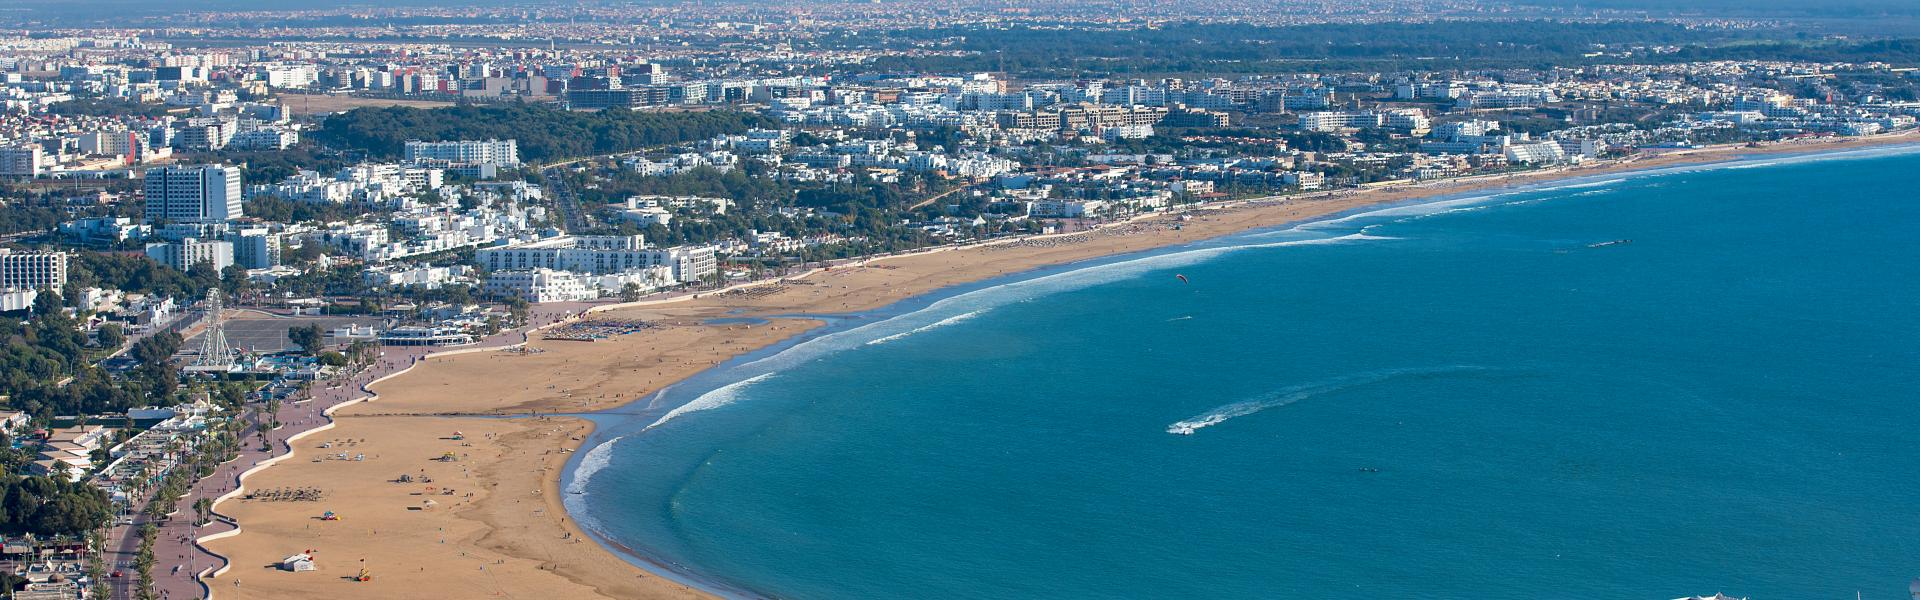 Ferienwohnungen & Ferienhäuser für Urlaub in Agadir - Casamundo